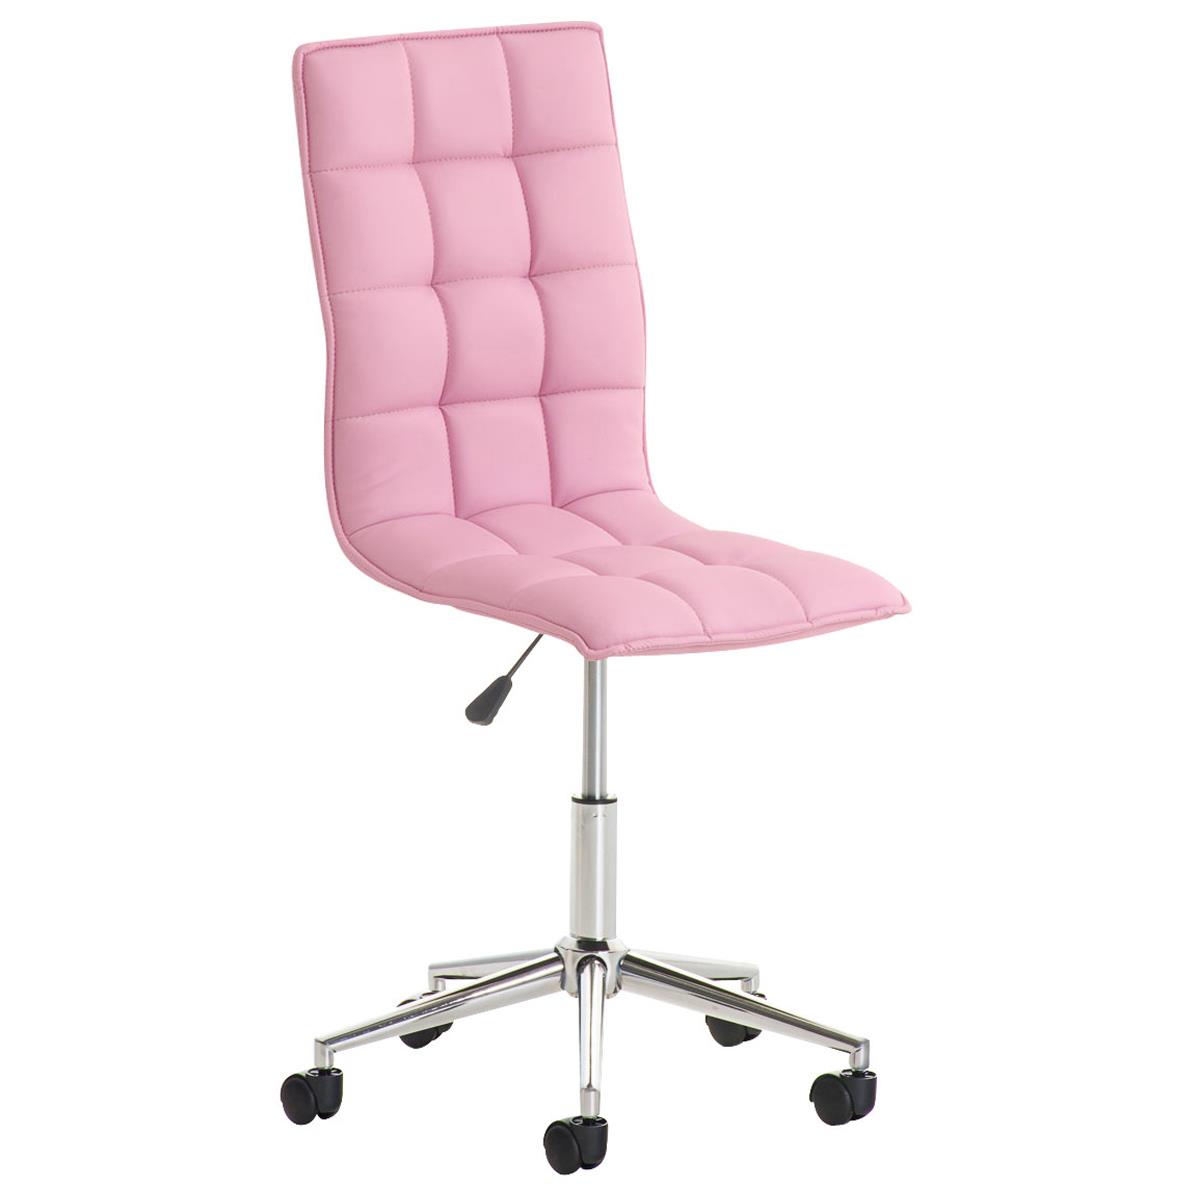 Chaise de bureau BULGARI, Design Sublime, Piétement Métallique, revêtement en Cuir, Rose